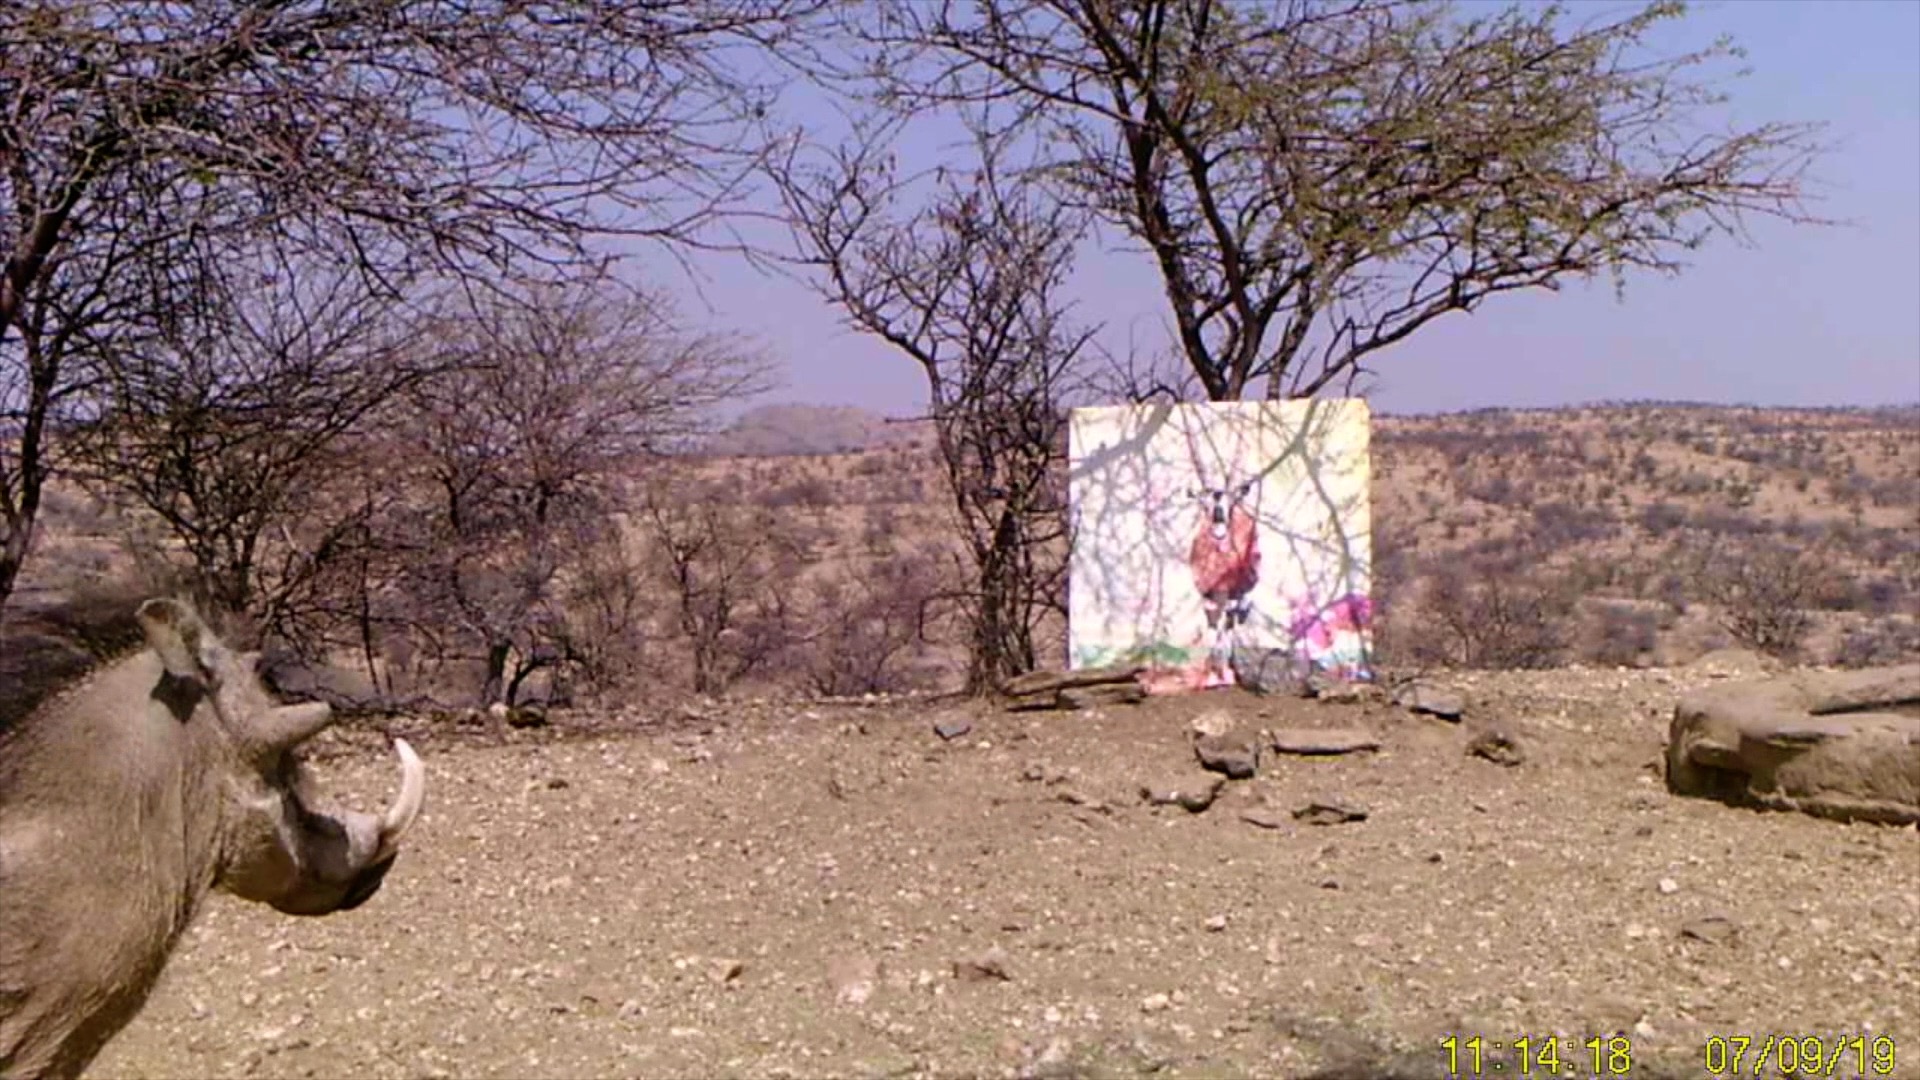 Filmstill SUPERWILDVISION Namibia 2019, Afrika, Nachtaufnahme Kunstprojekt von Irene Mueller, Warzenschwein betrachtet Gemaelde Antilope